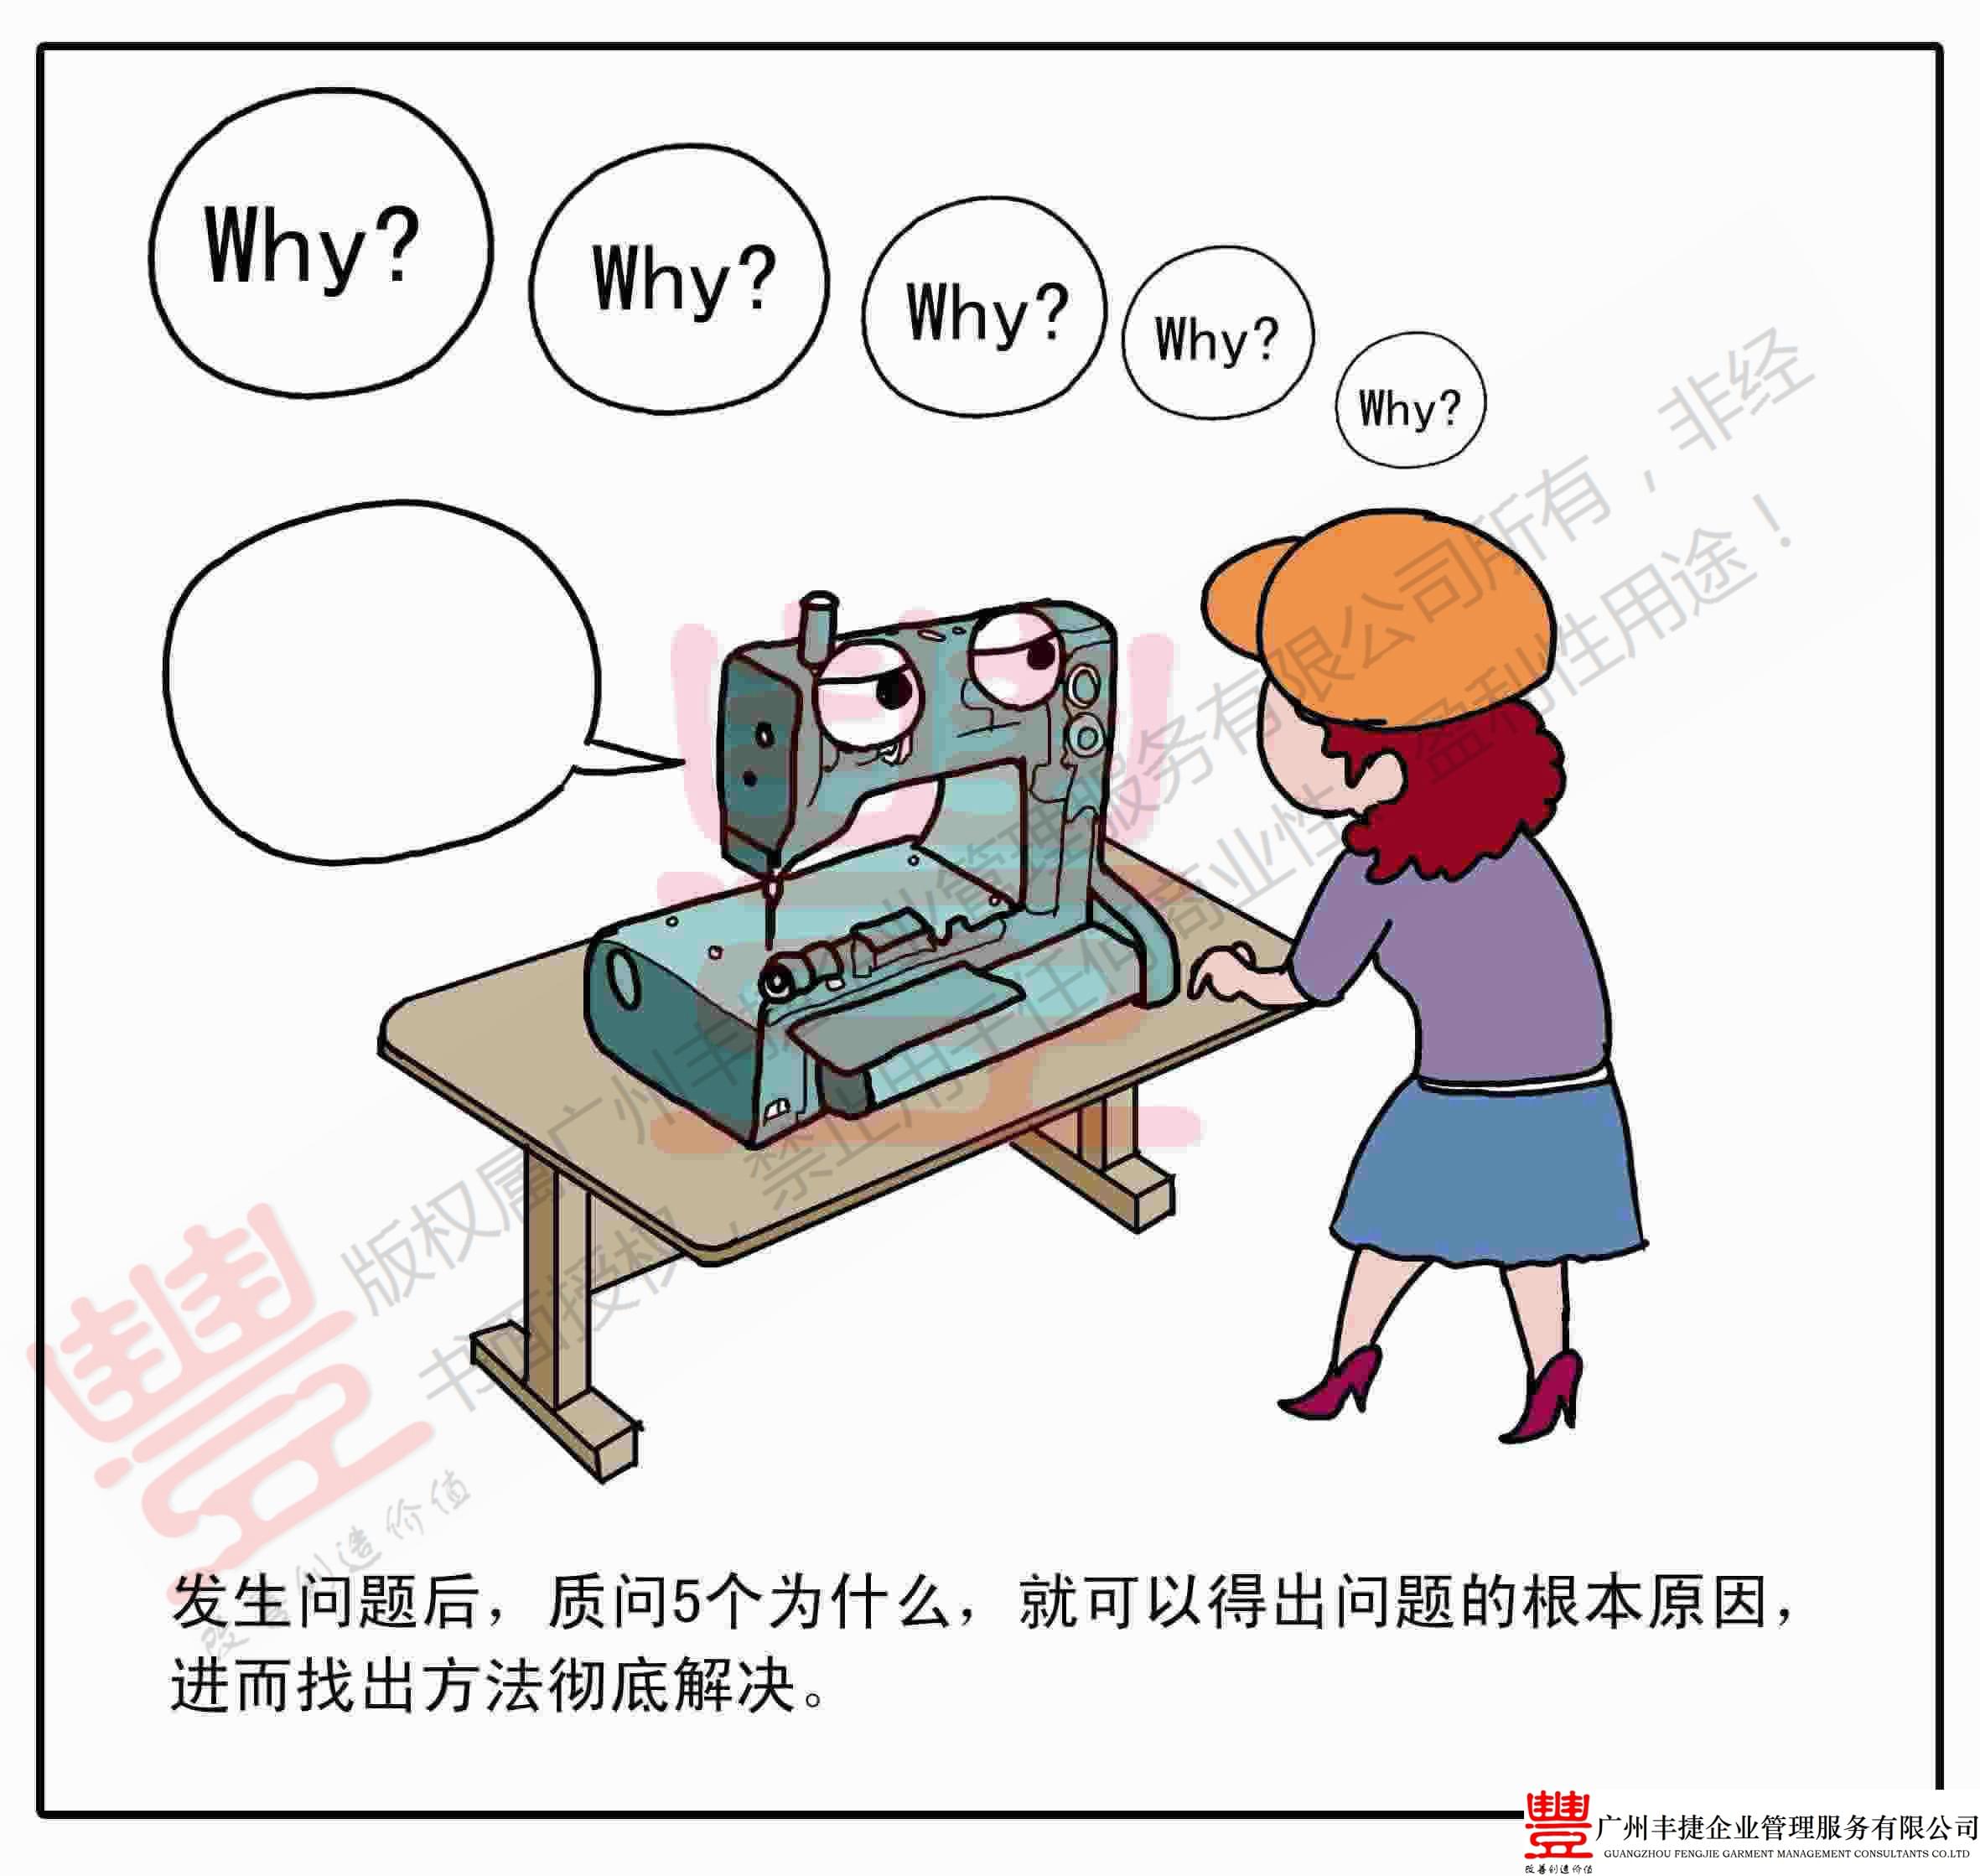 五个为什么,丰捷精益管理漫画,丰捷服装精益生产改善项目,广州丰捷企业管理服务有限公司